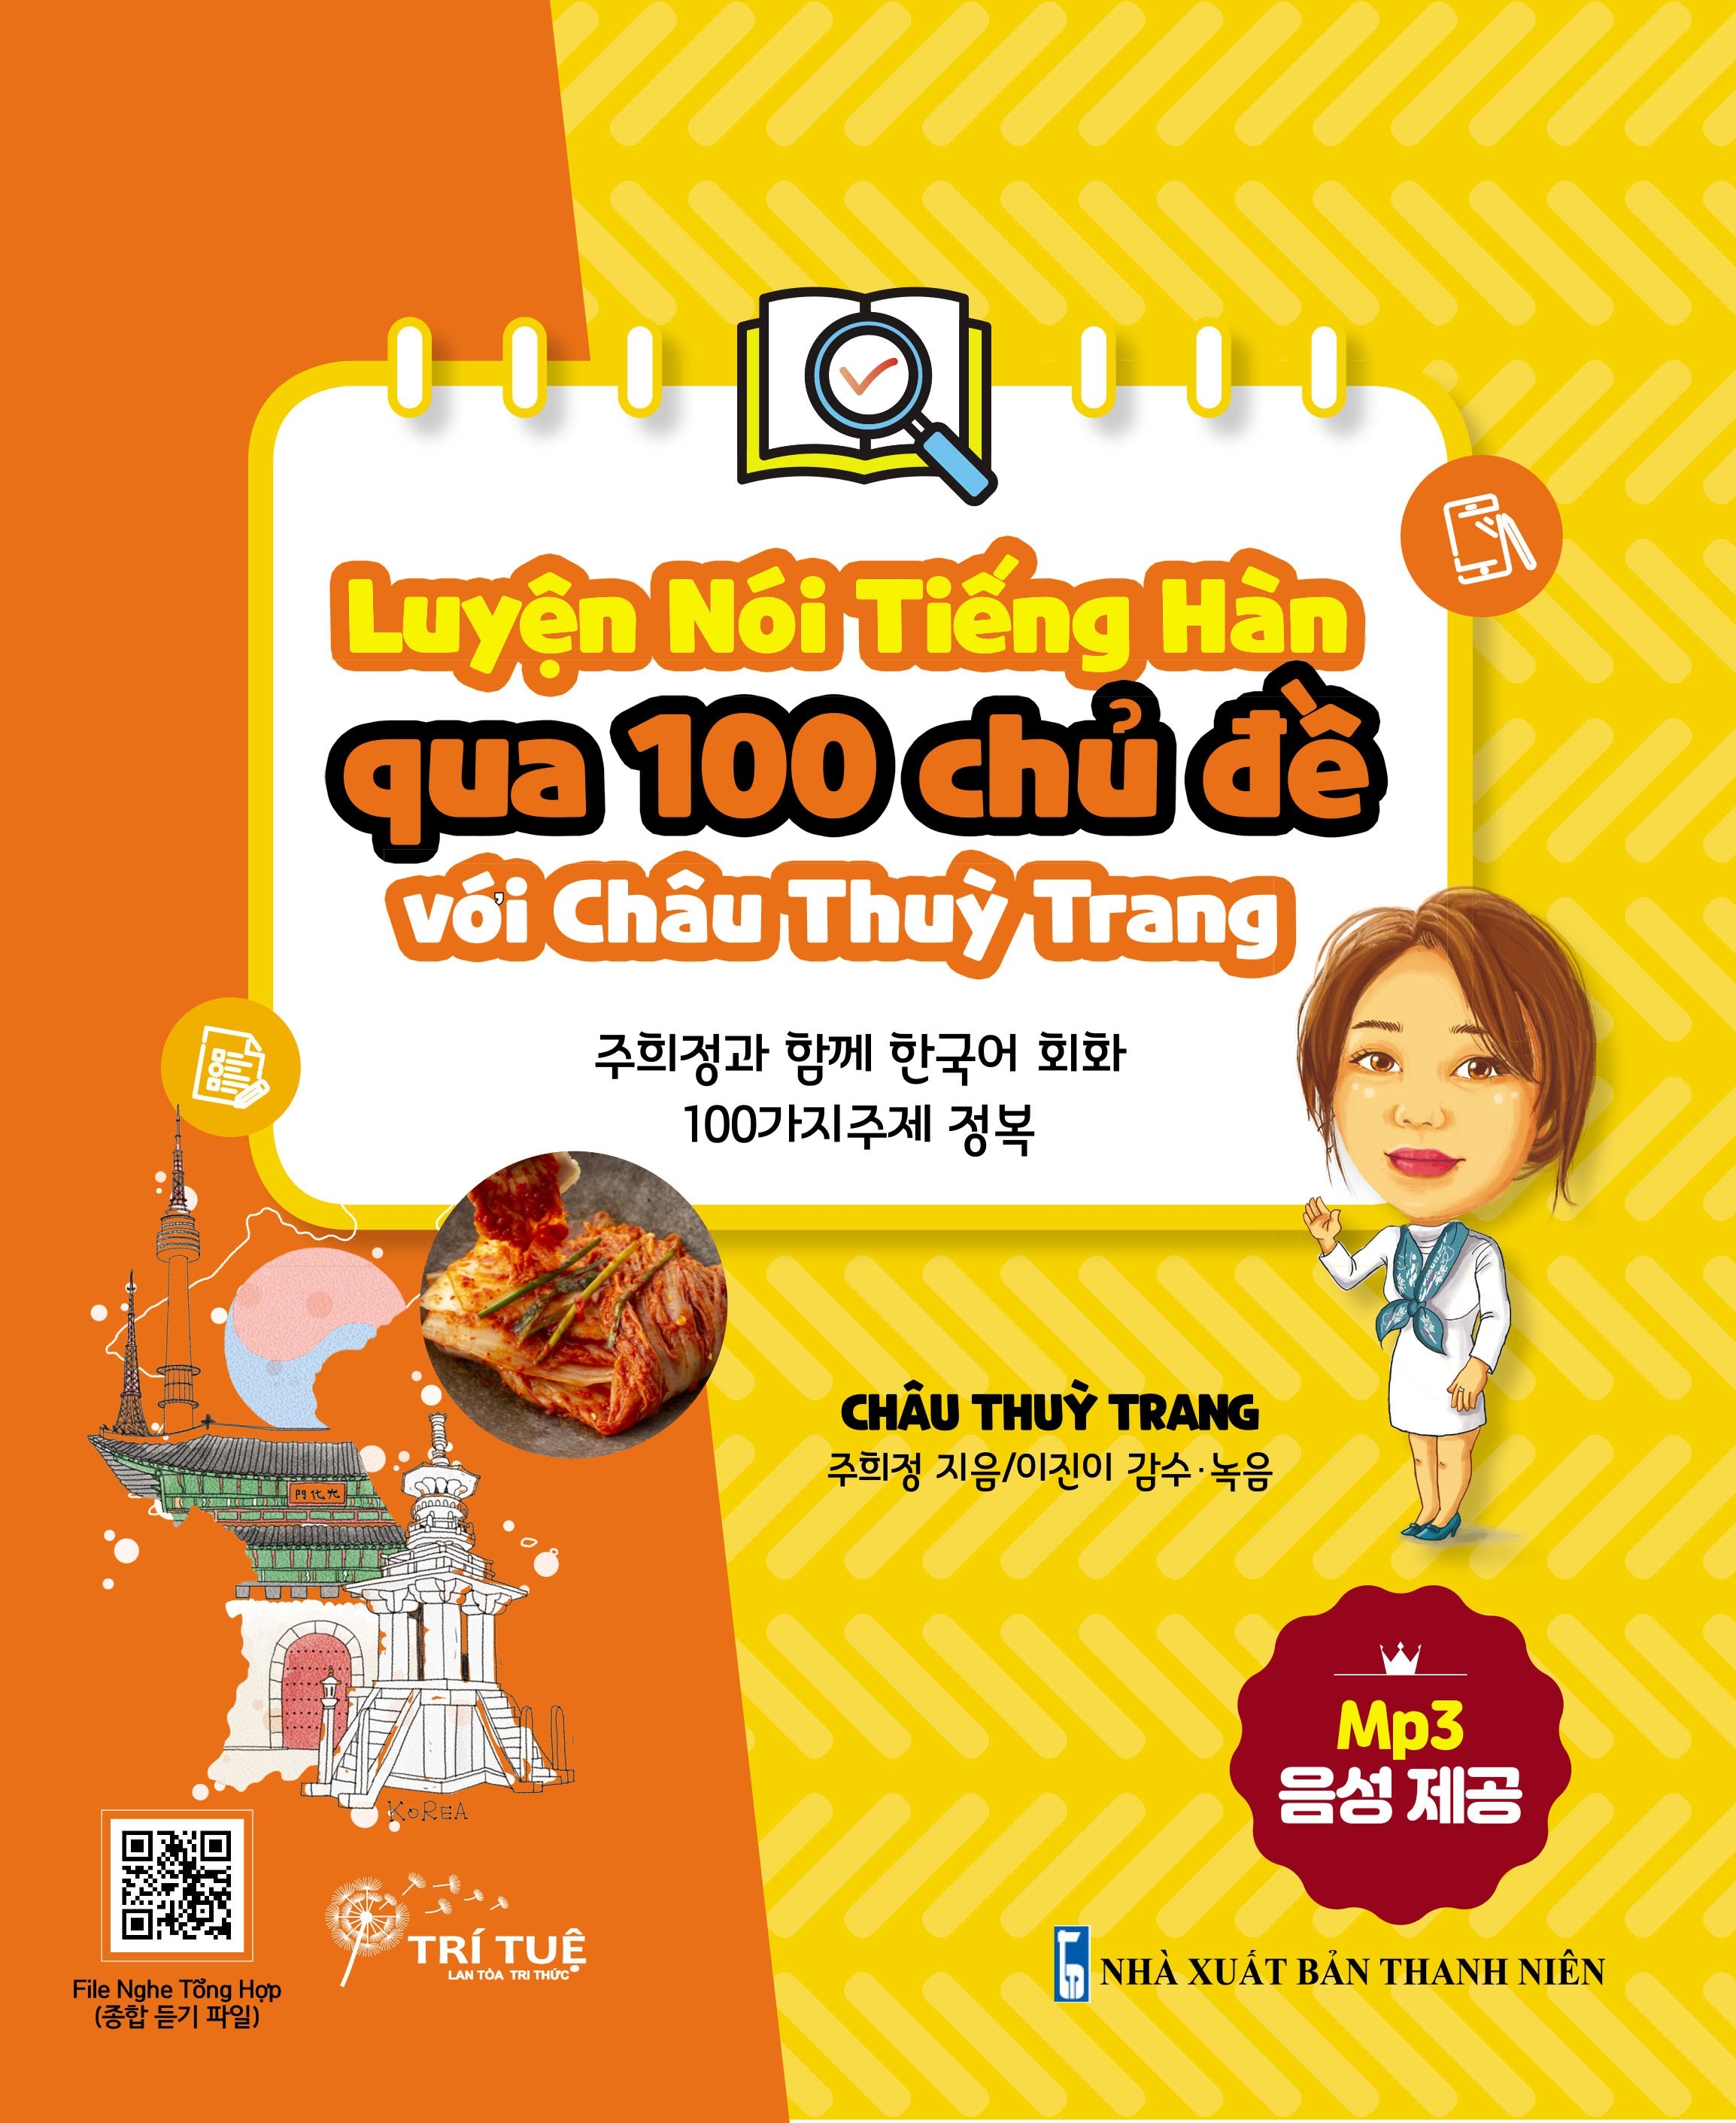 Luyện Kỹ Năng Nói Tiếng Hàn Qua 100 Chủ Đề Với Châu Thùy Trang PDF